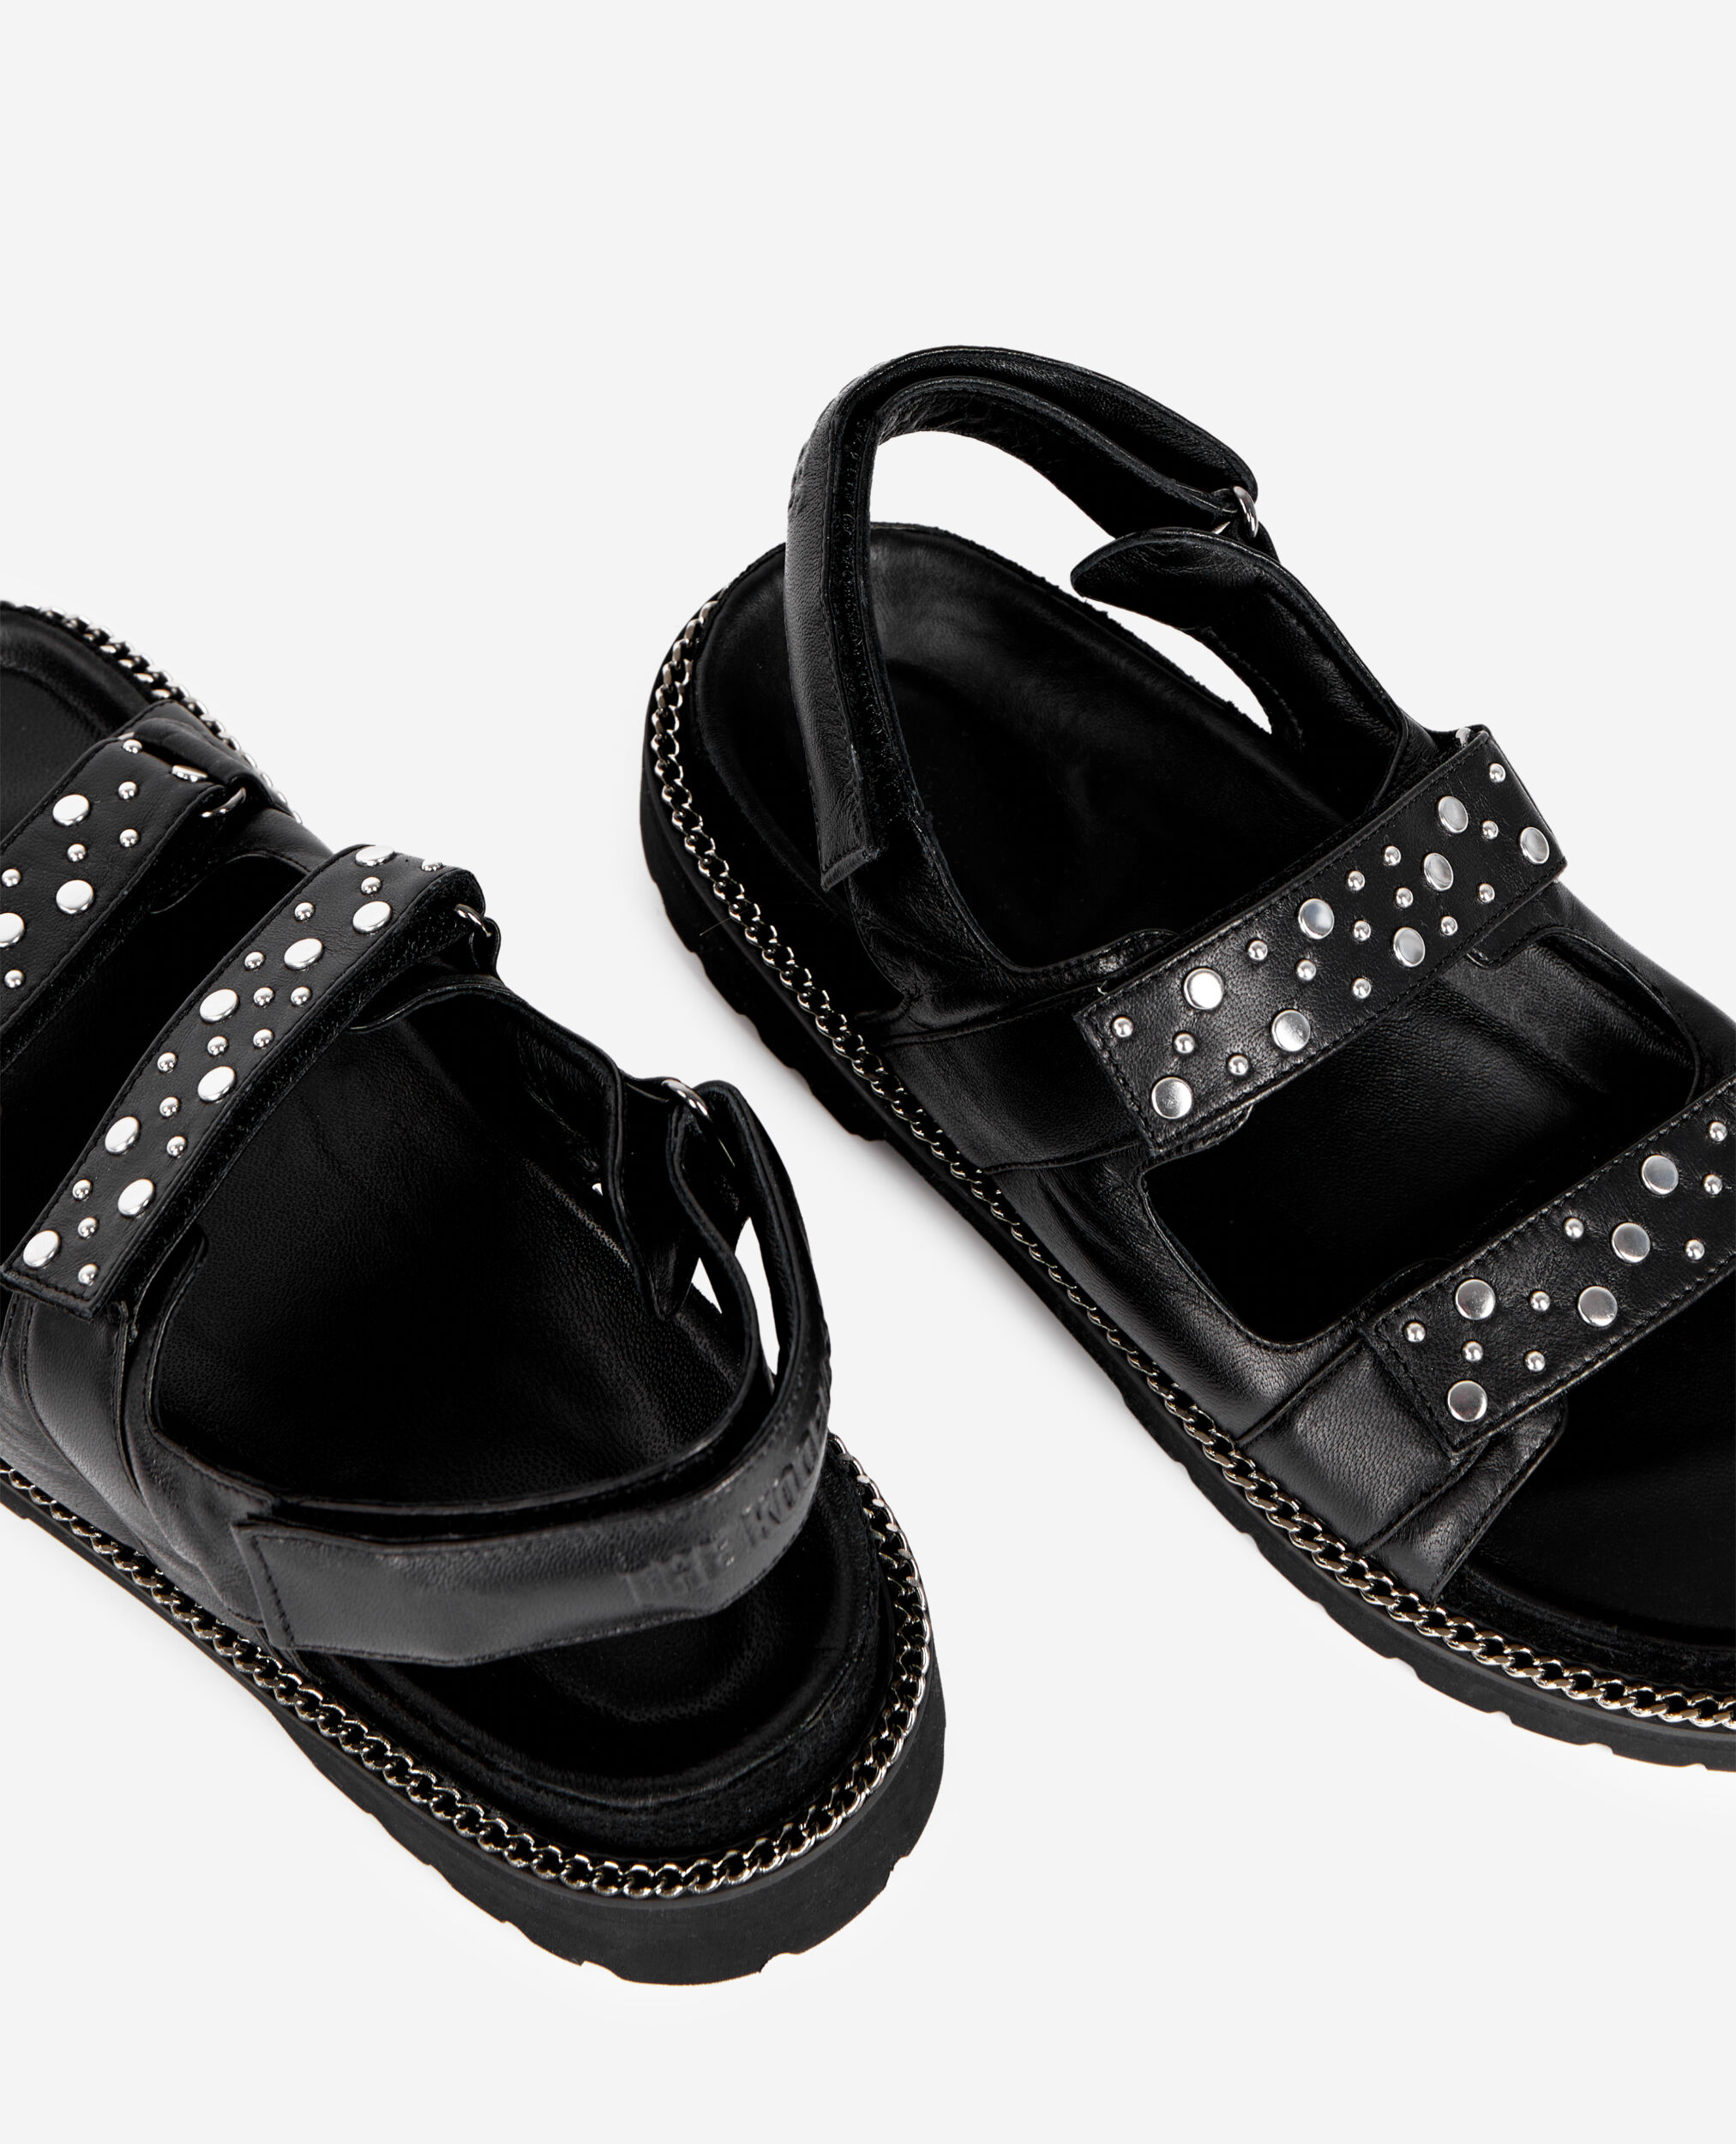 Sandales plates en cuir noir avec chaîne et clous, BLACK, hi-res image number null